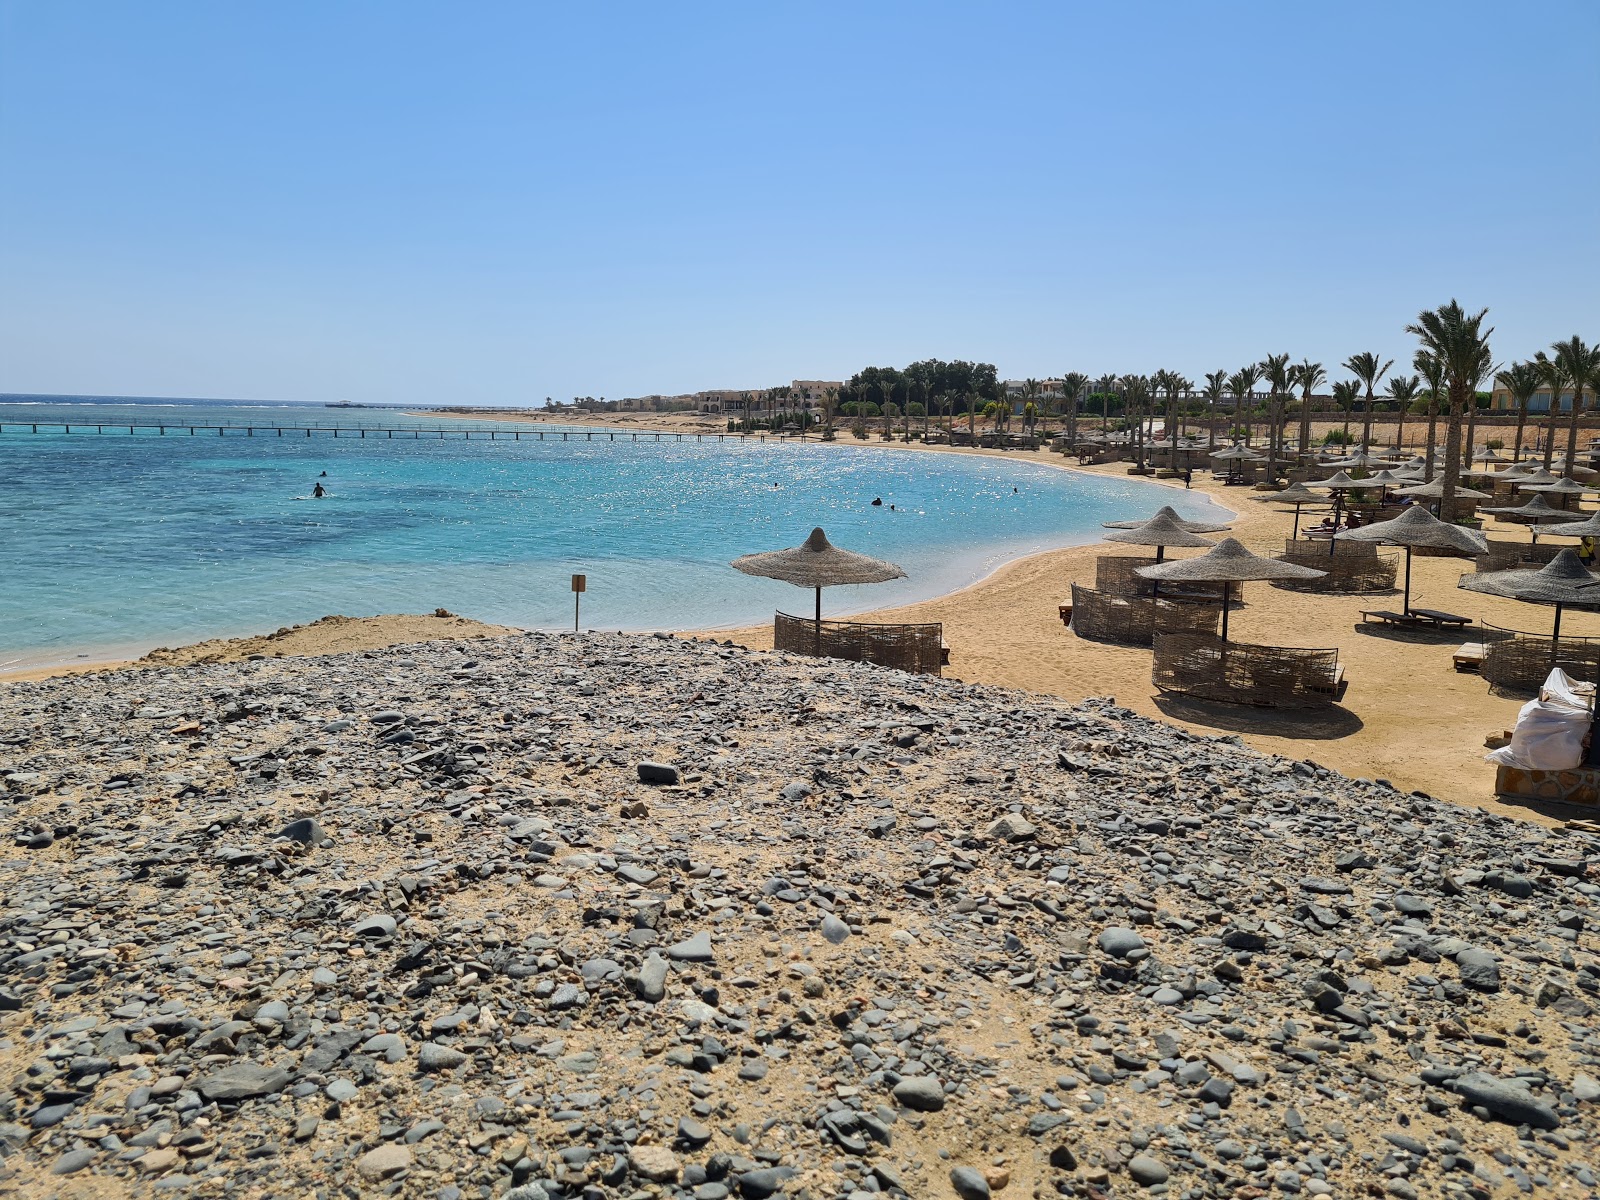 Foto de Praia do Elphistone Resort Marsa Alam - lugar popular entre os apreciadores de relaxamento